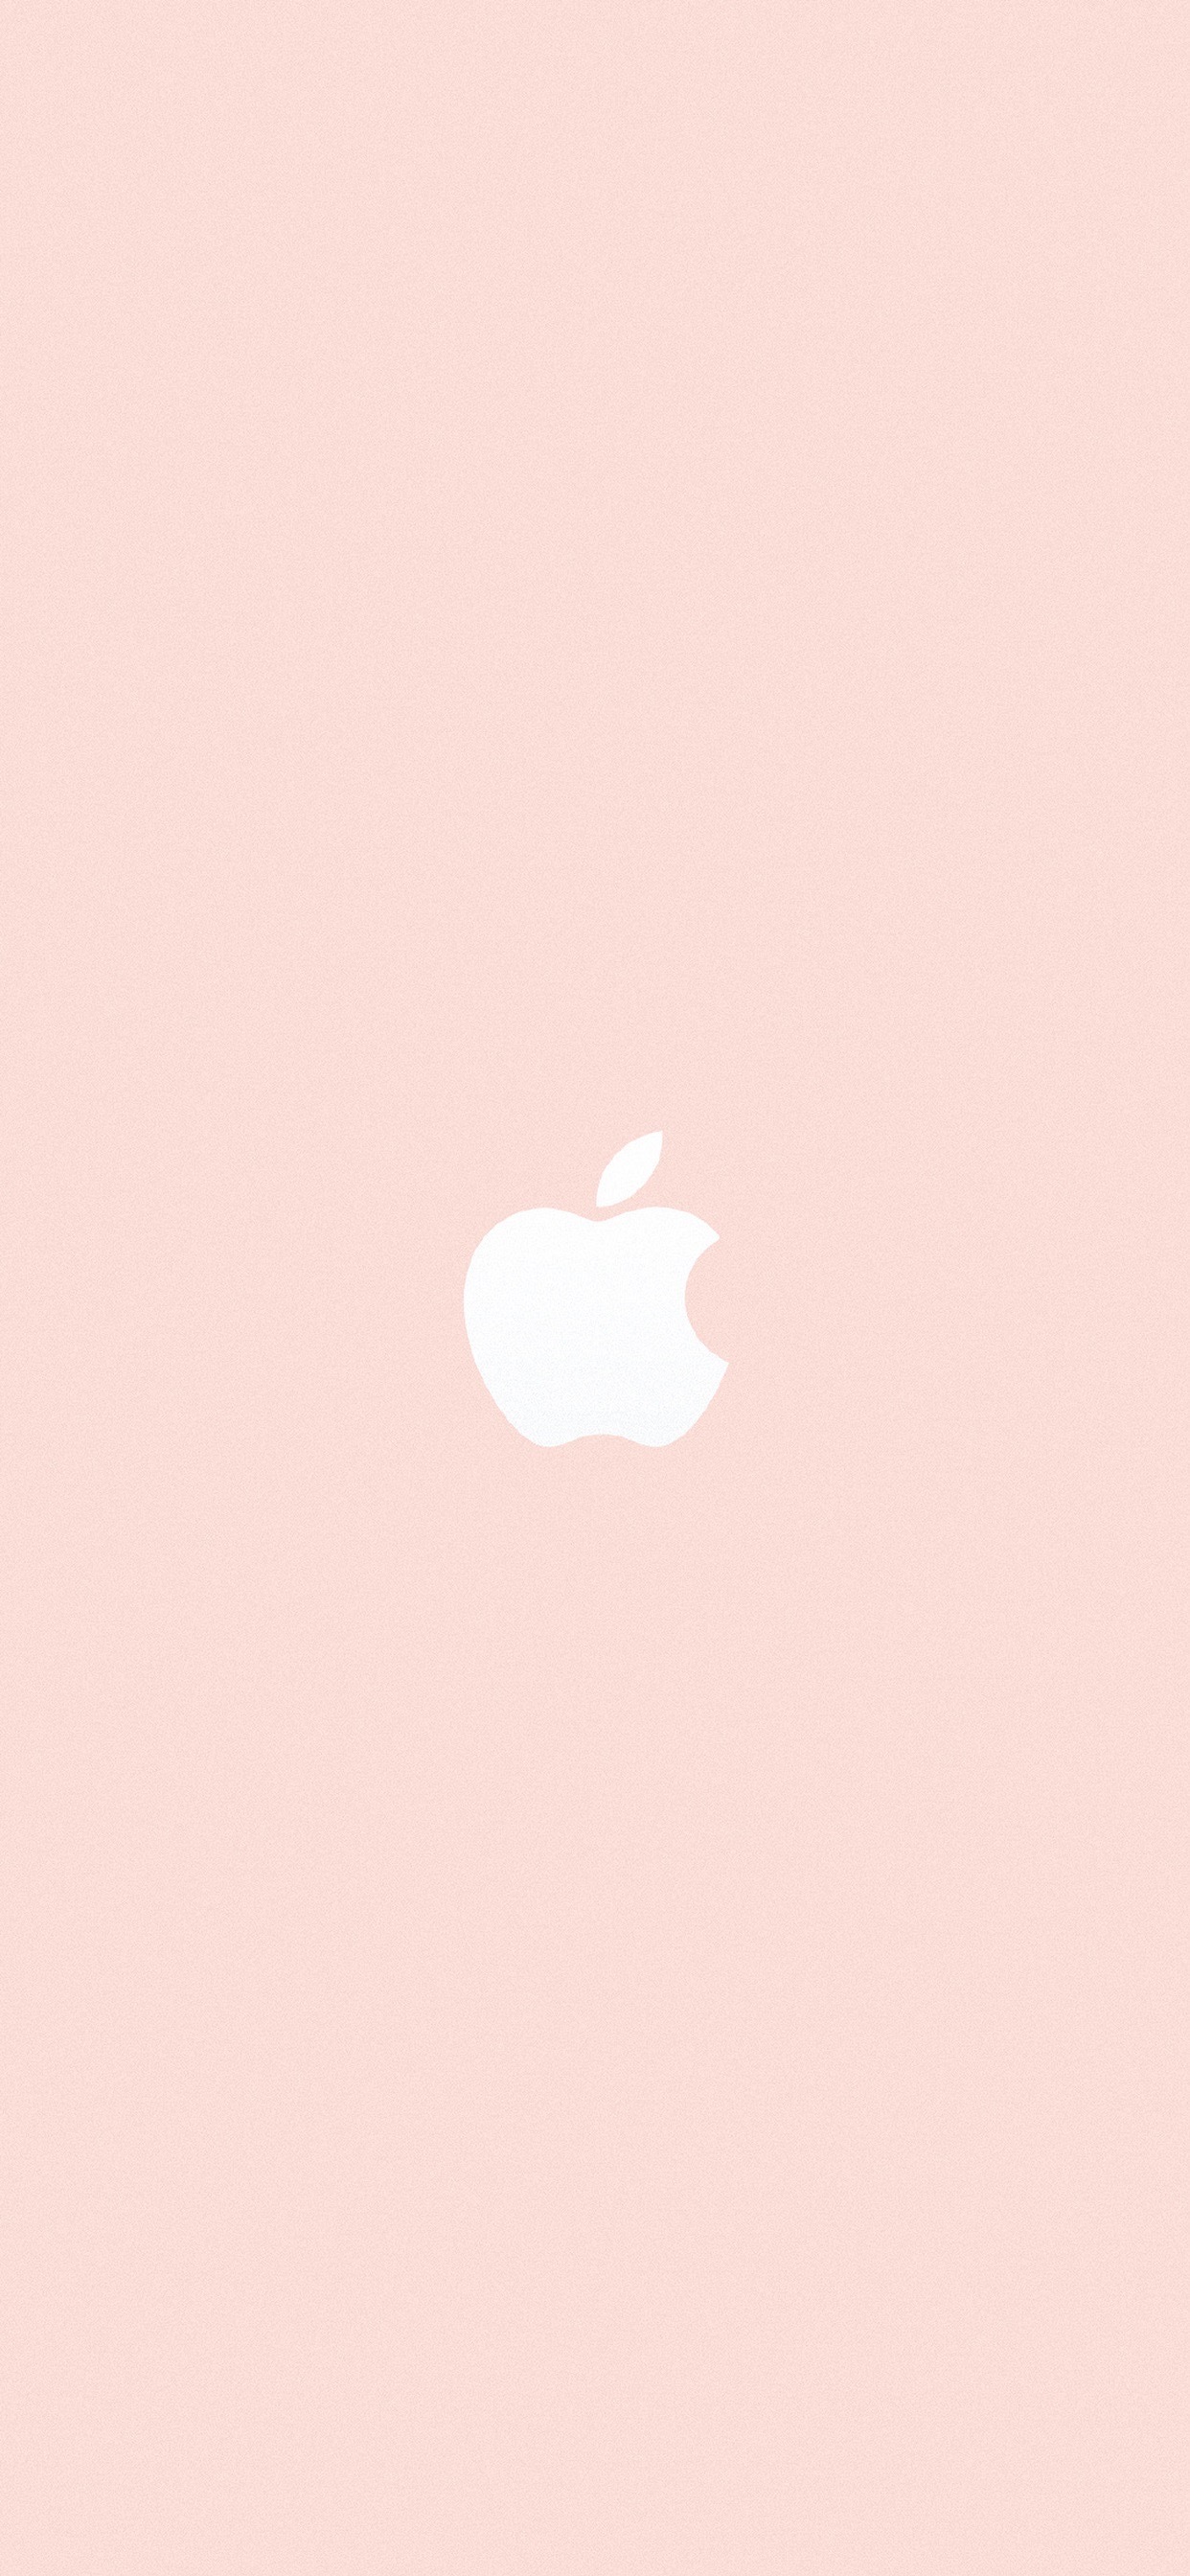 苹果logo13配色创意手机壁纸